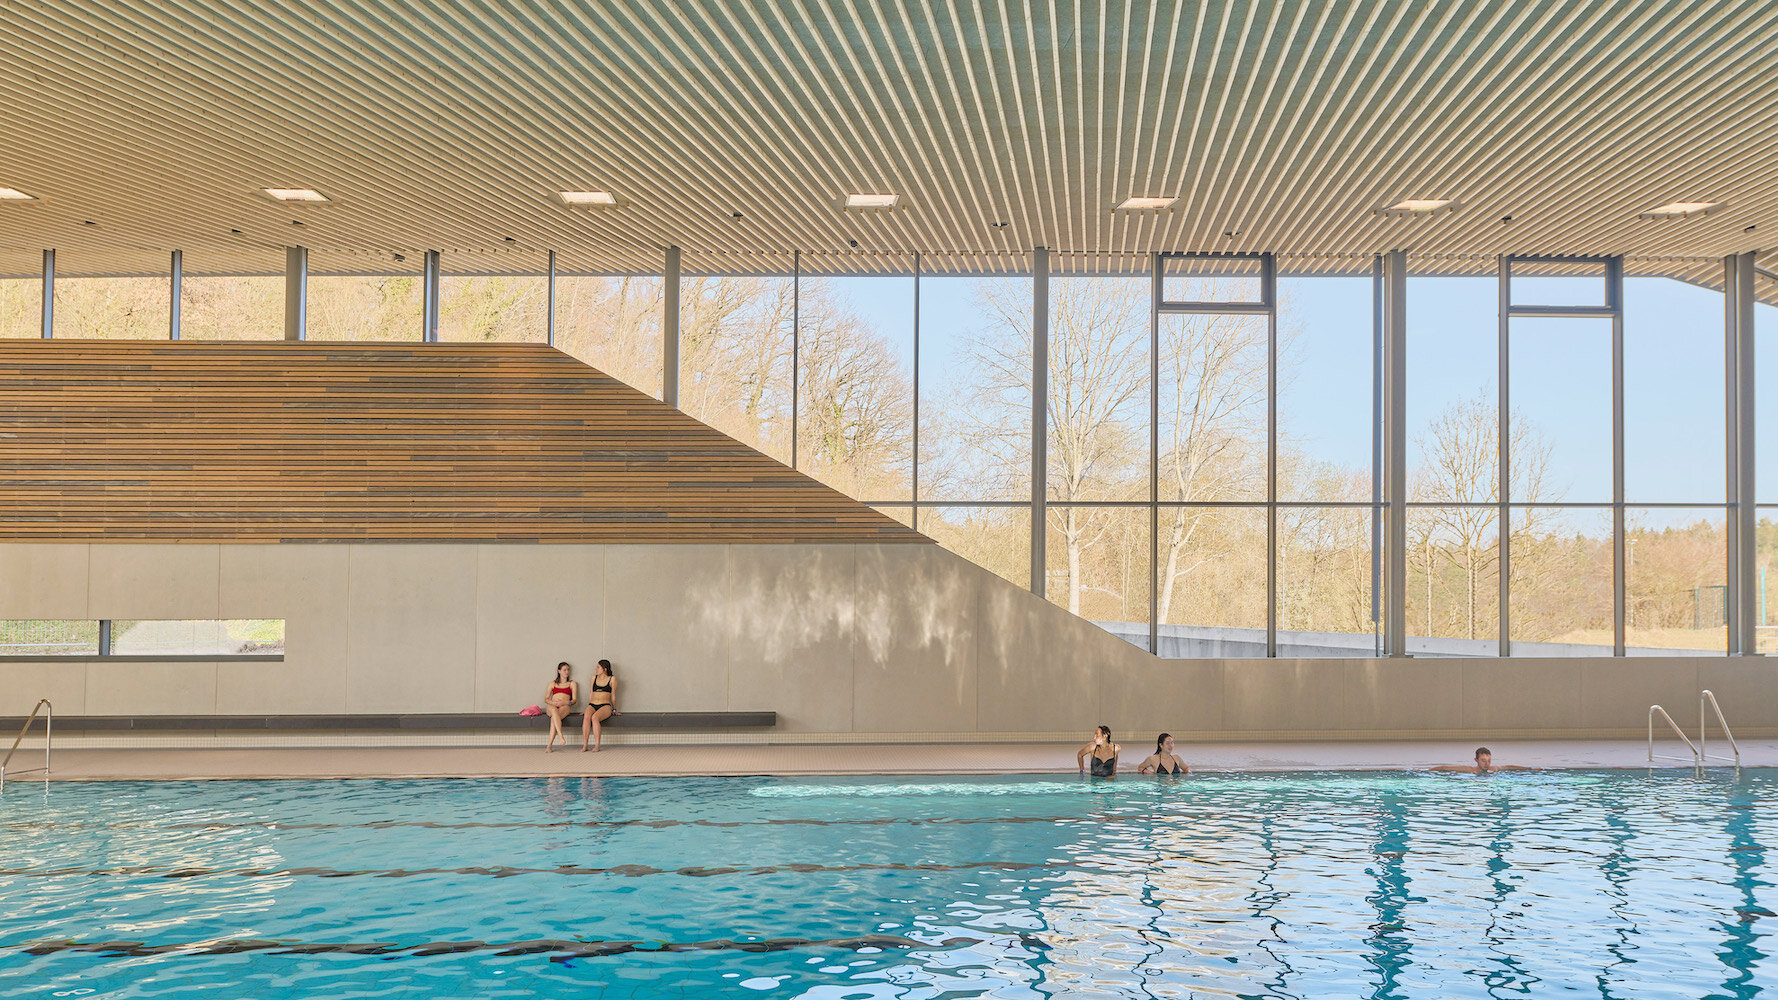 Behnisch Arkitekten's Schwaketenbad Aquatic Center Puts a Pool-Packed Program Under Three Distinctive Roofs